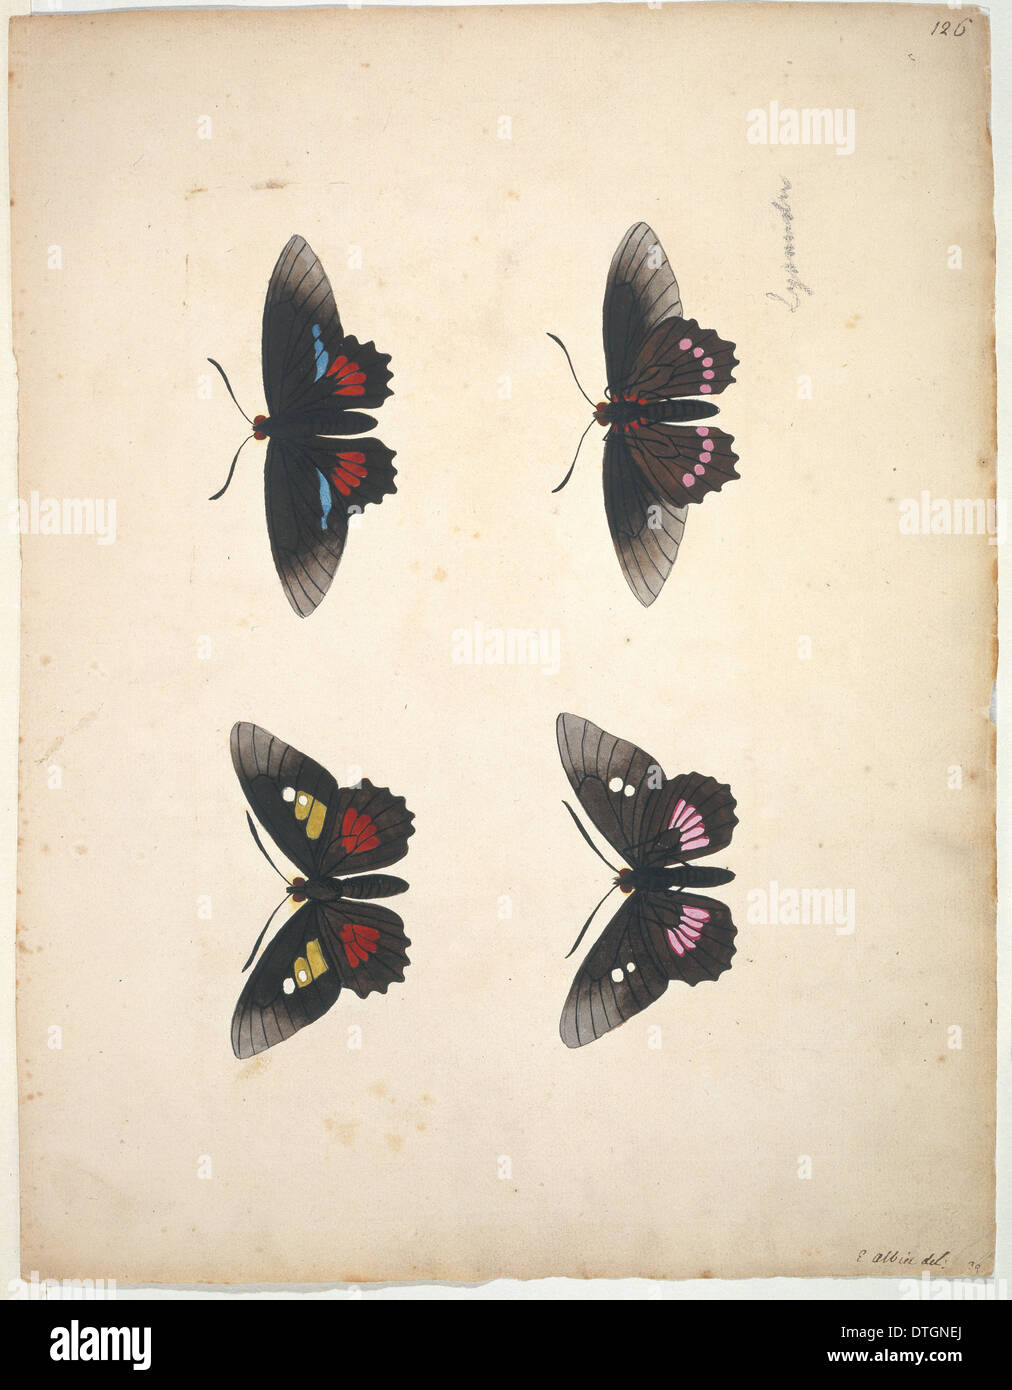 Unveröffentlichte Lepidoptera Aquarell von Eleazar Albin Stockfoto